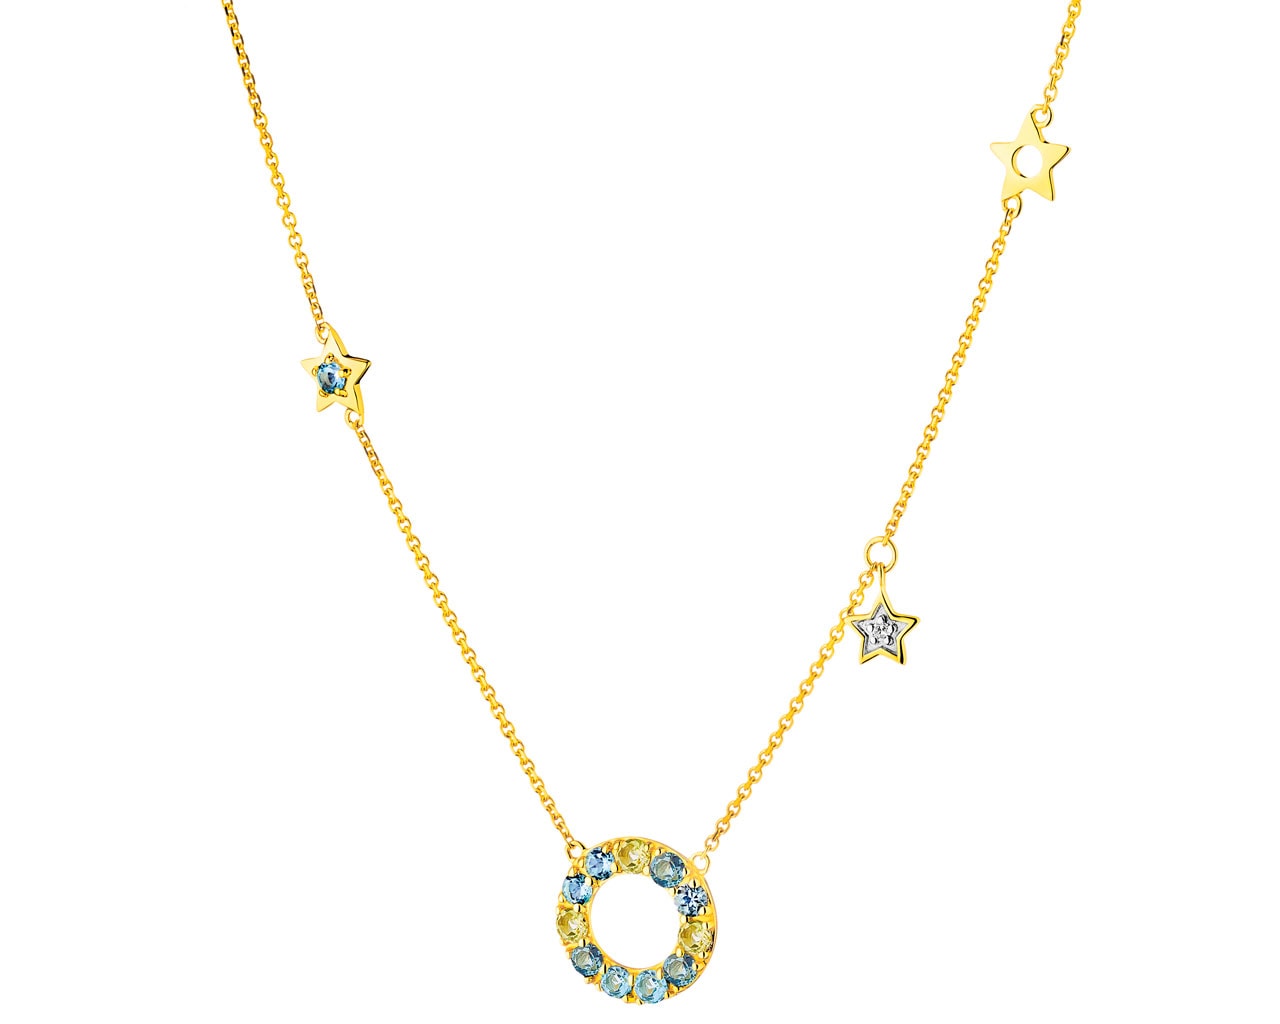 Naszyjnik z żółtego złota z diamentem, peridotami i topazami - gwiazdy  0,006 ct - próba 375